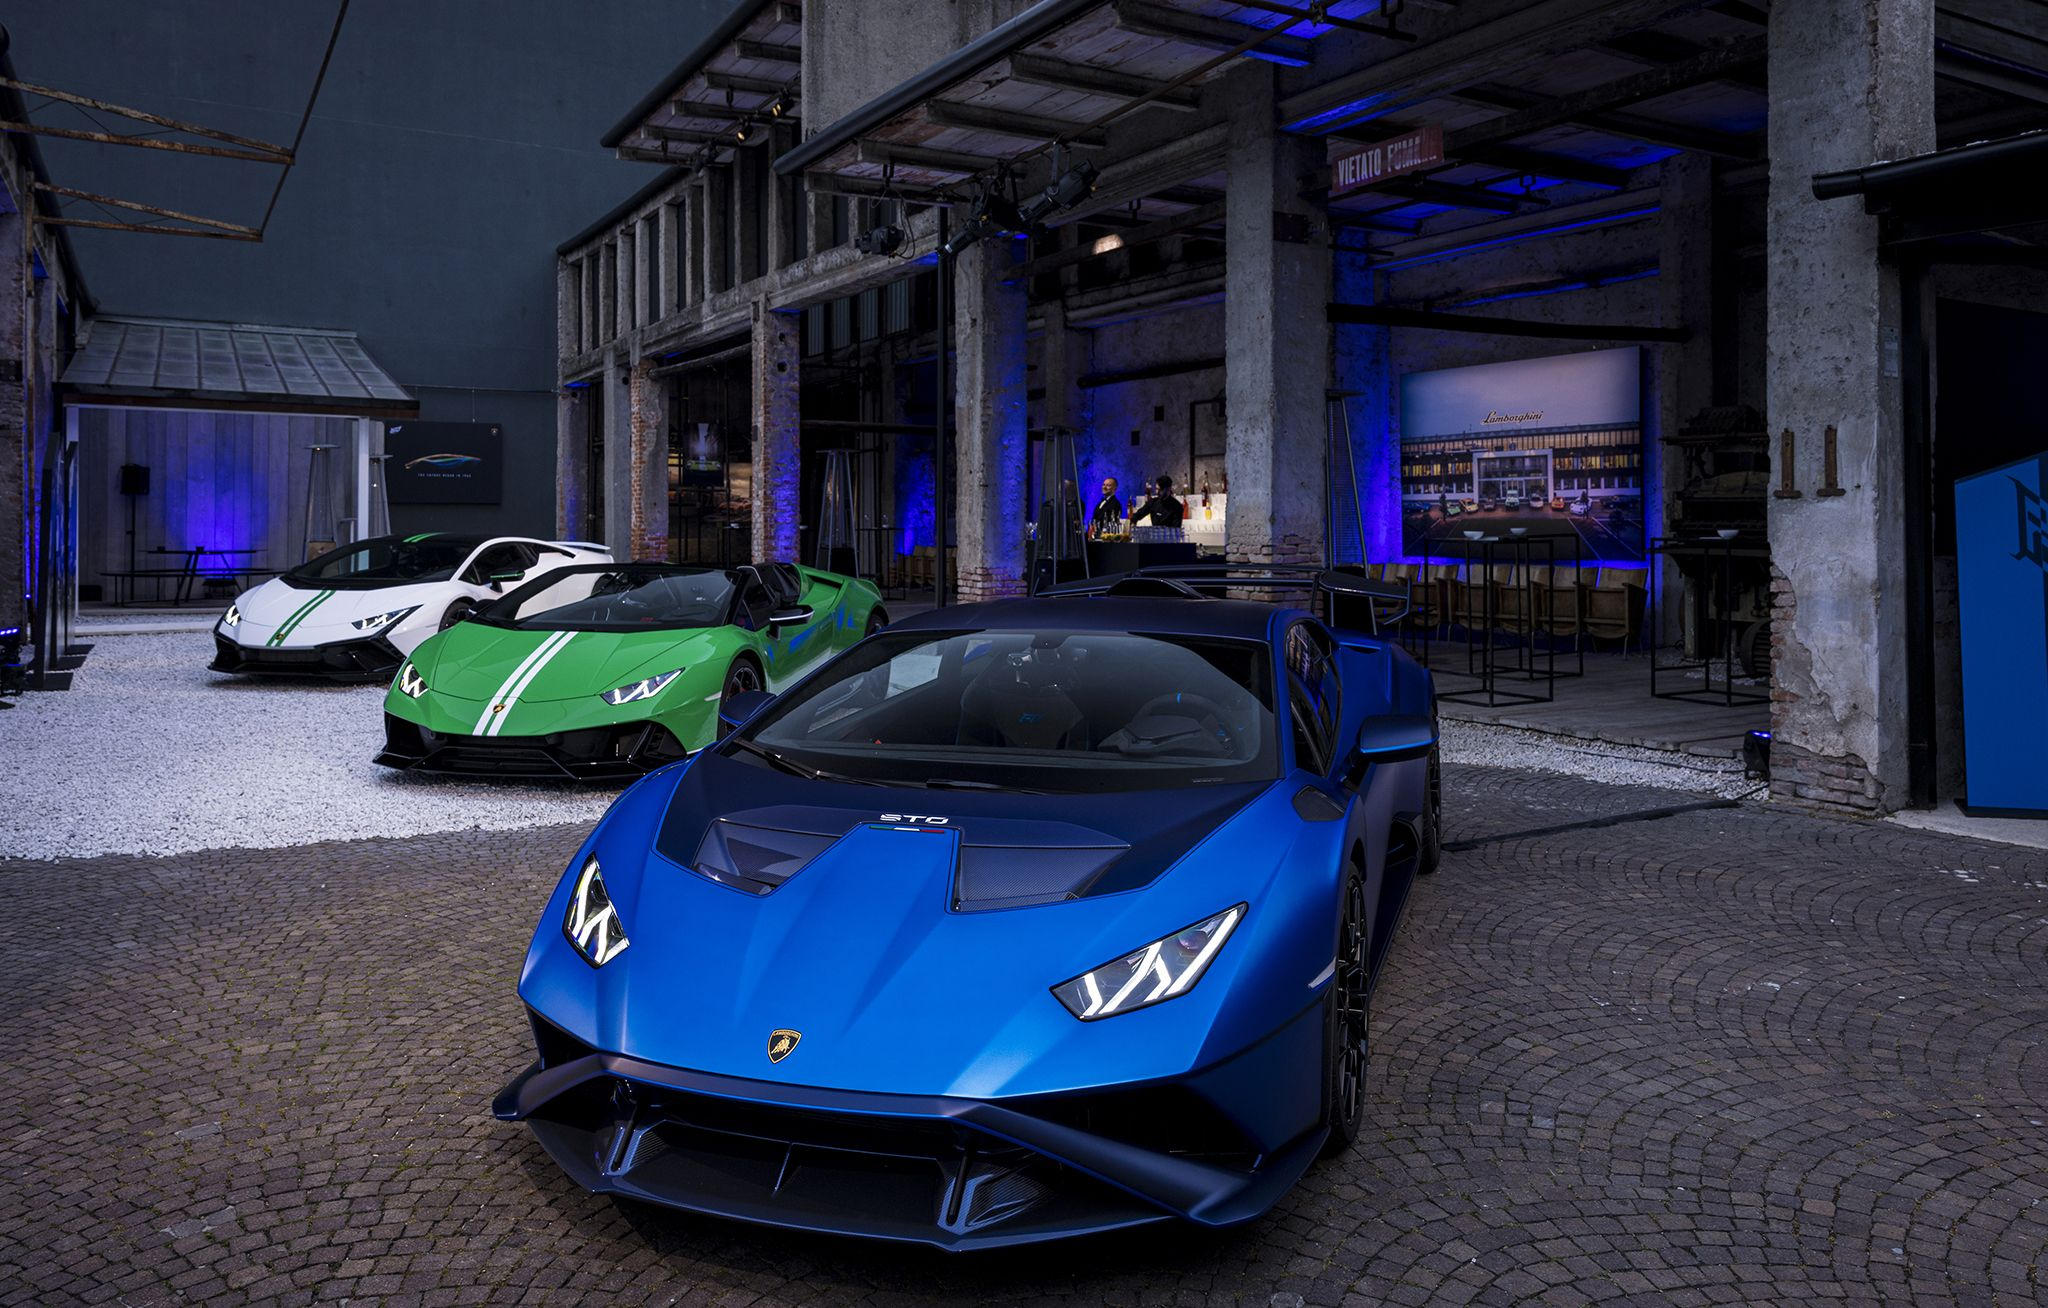 Lamborghini brings color - to Milan Design Week